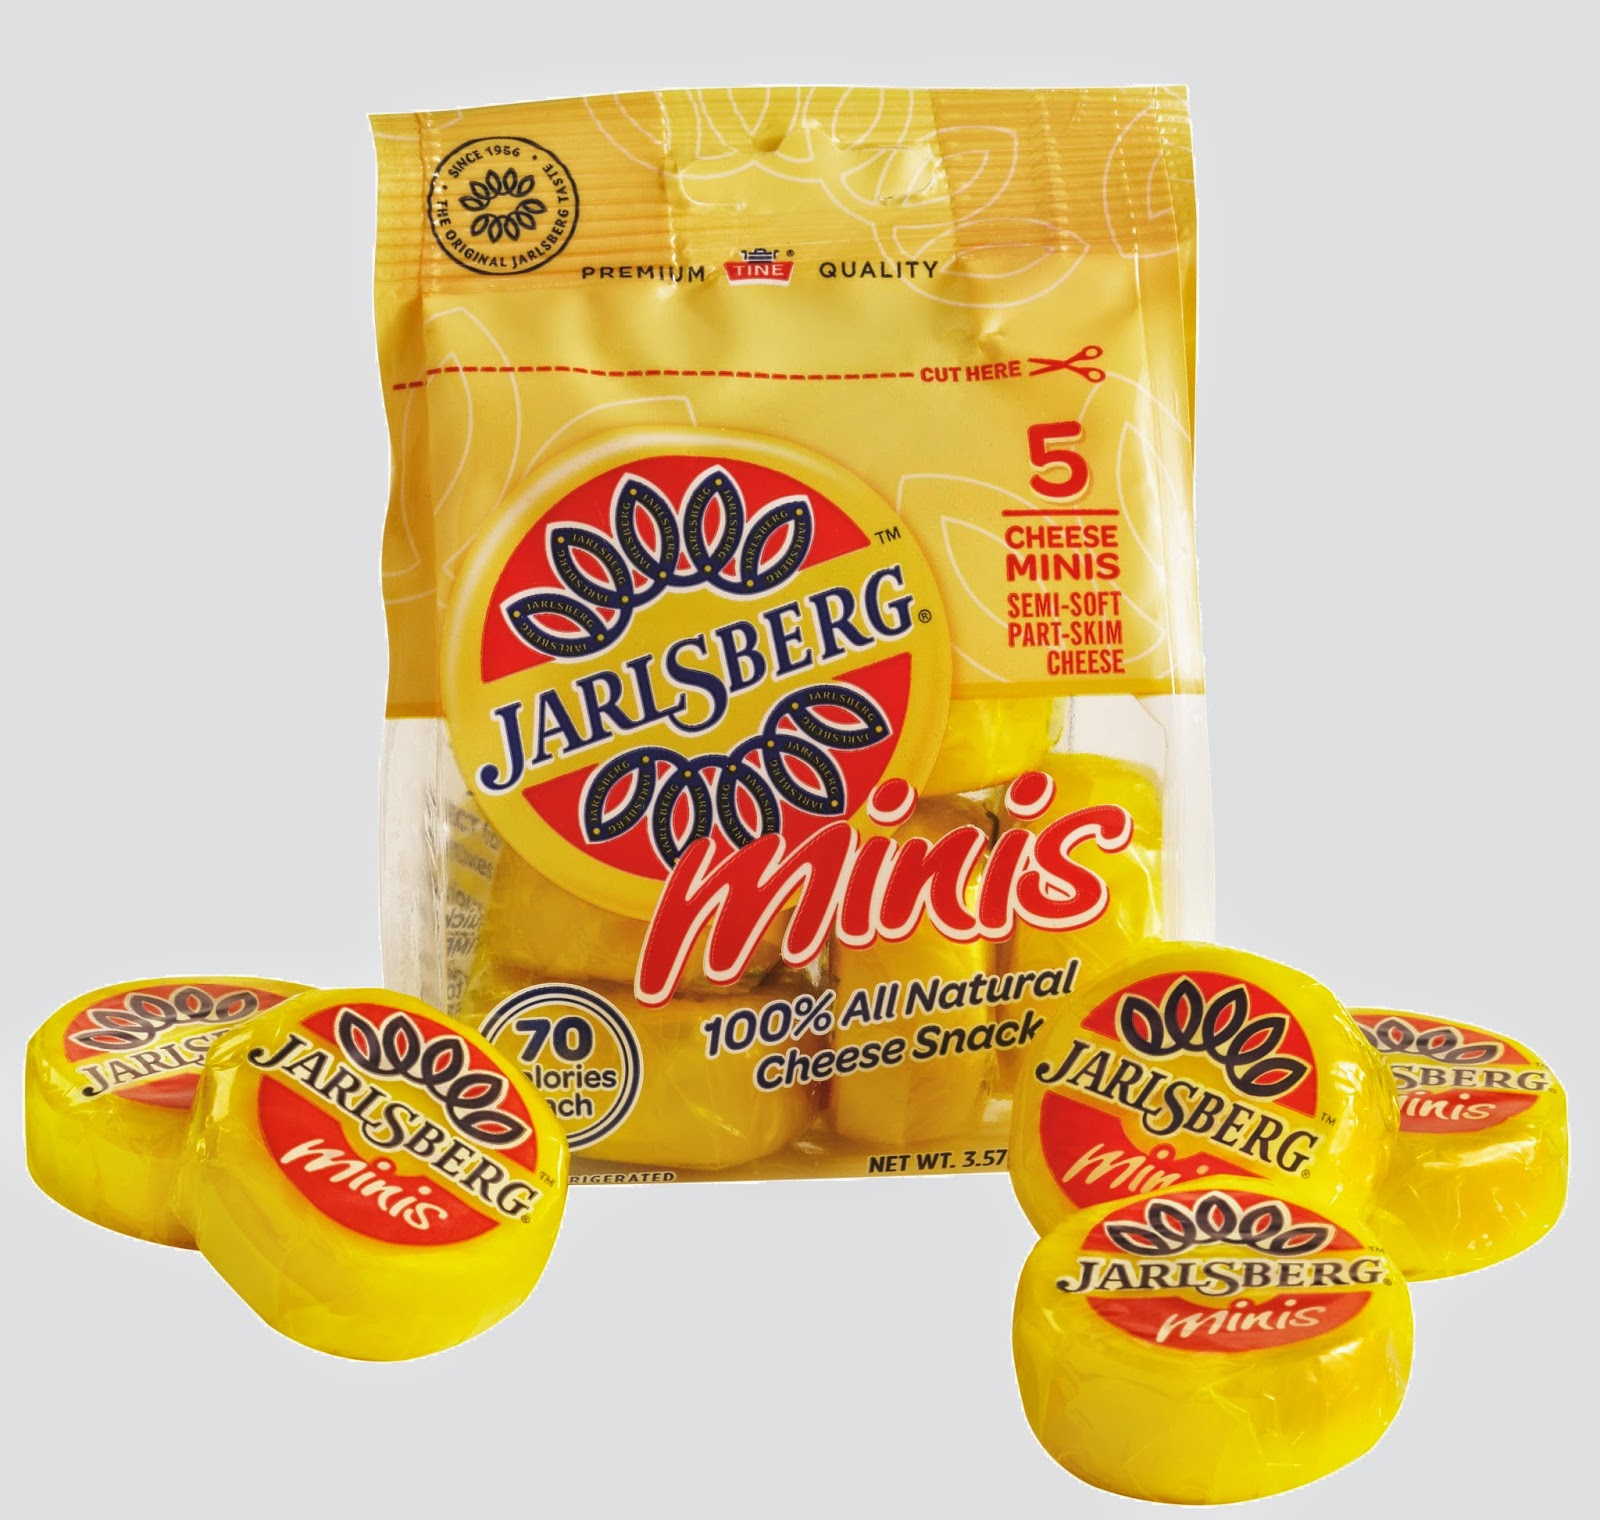 Jarlsberg_minis3 Best Cheese To Eat - Jarlsberg Minis